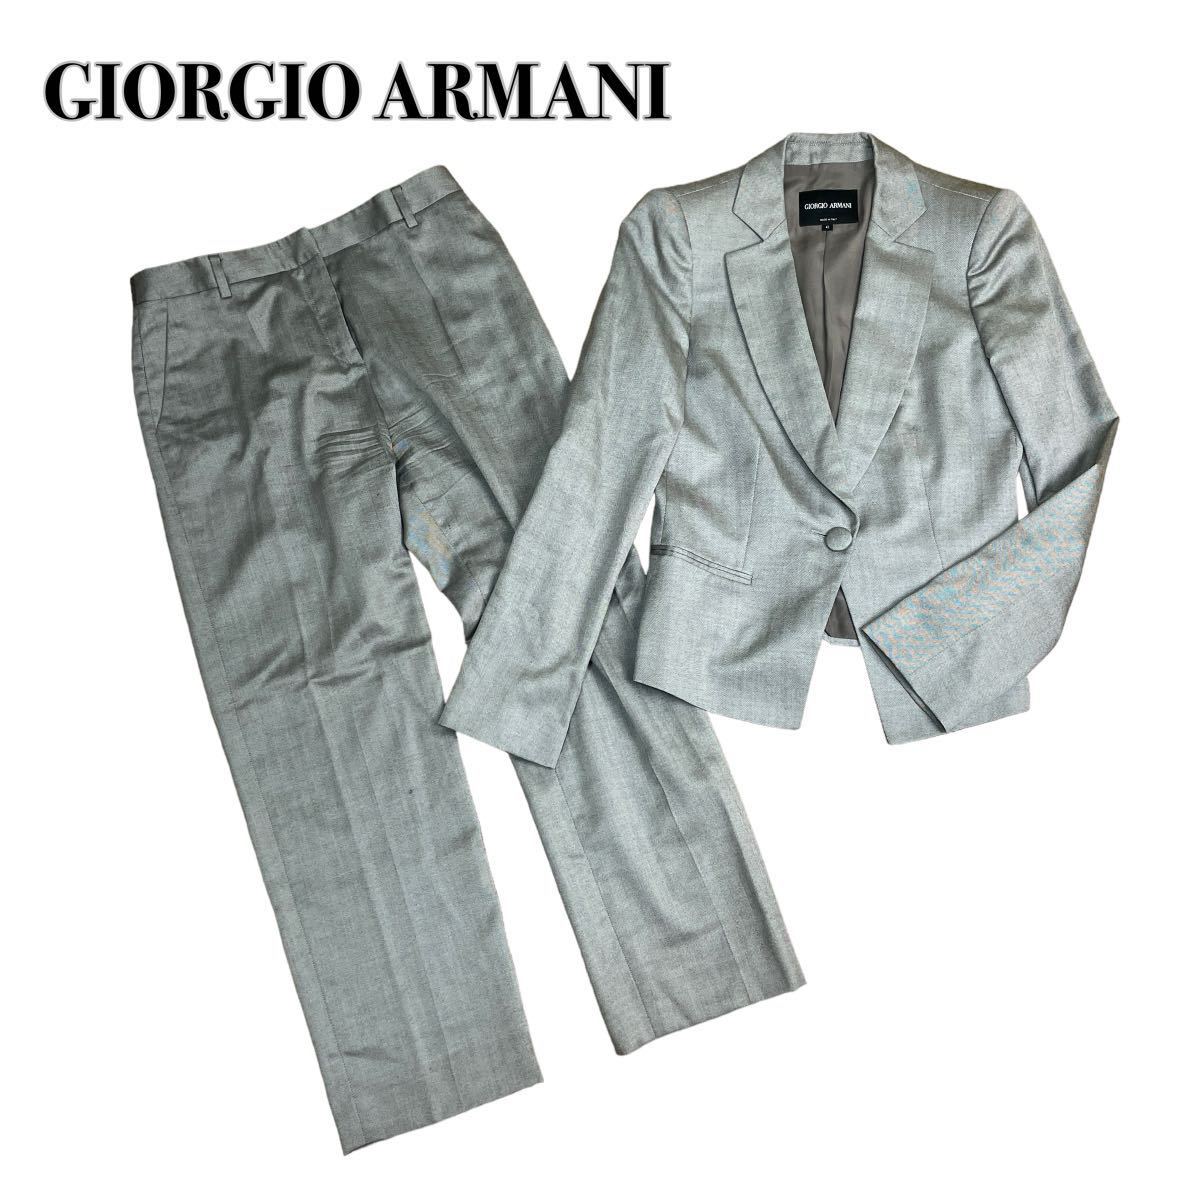 GIORGIO ARMANI ジョルジオアルマーニ セットアップ パンツスーツ 光沢シルバー カシミヤシルク 42 XL 大きいサイズ